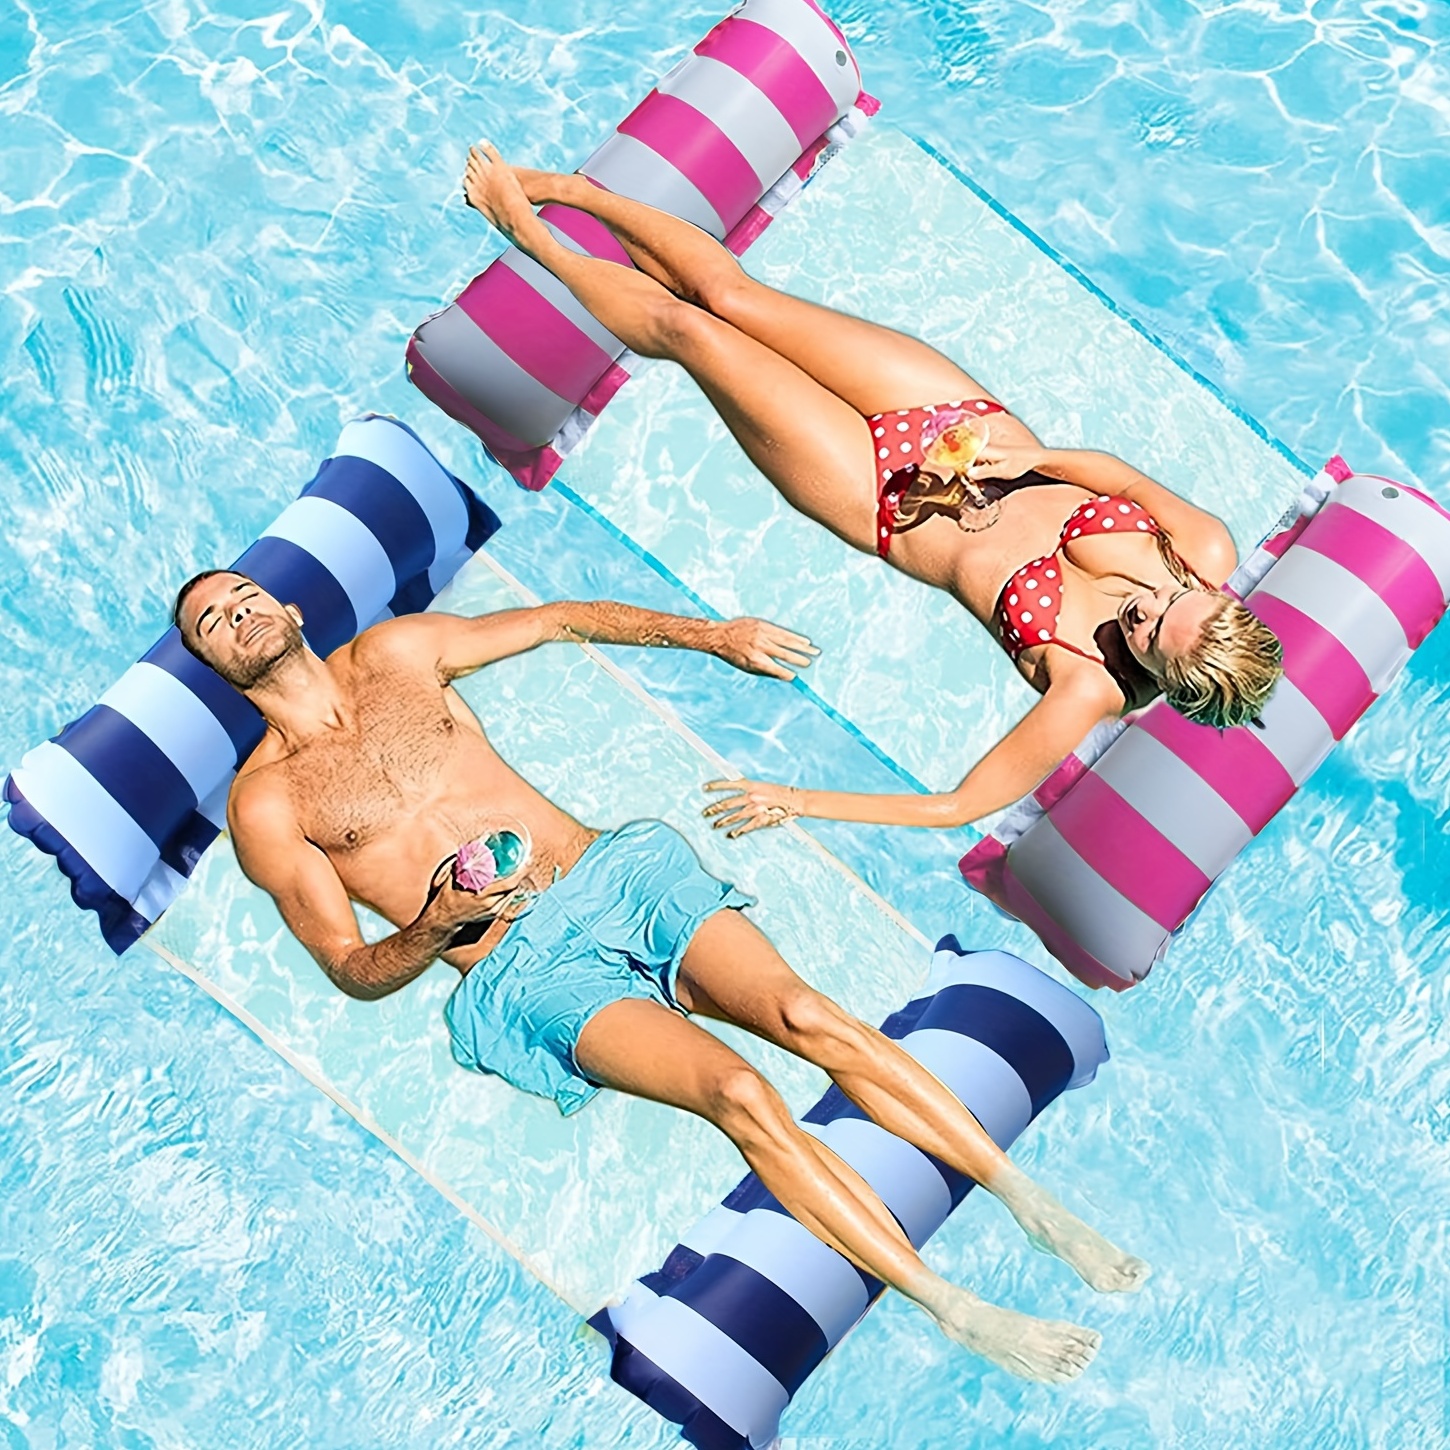 Sofá inflable para adultos playa tumbona piscina juguetes